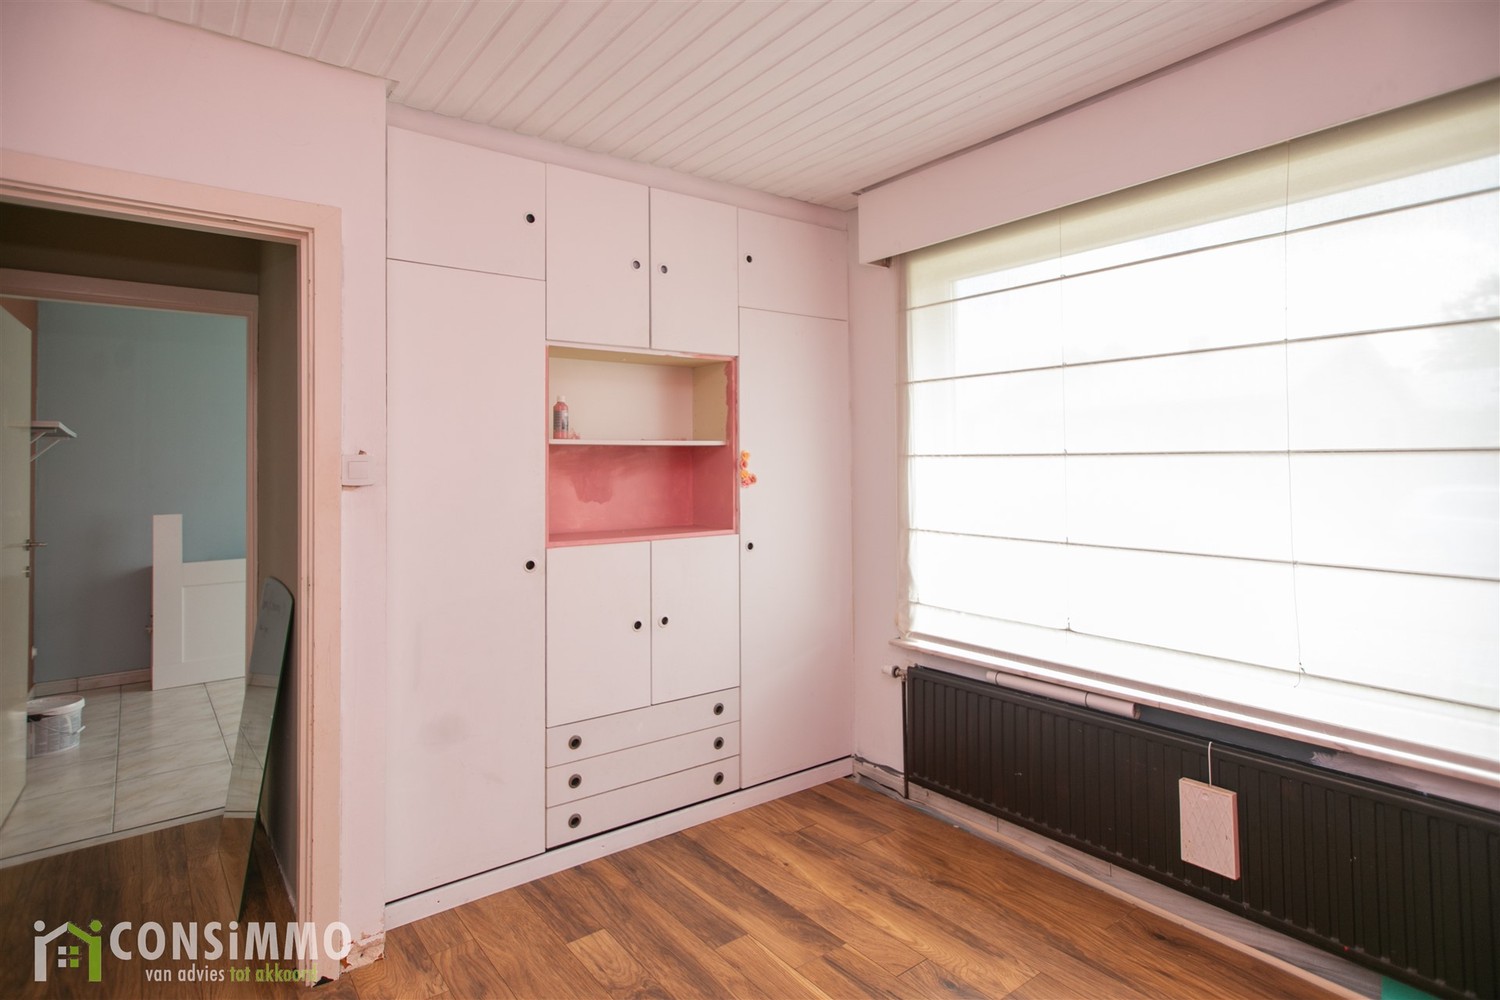 Vrijstaande, gelijkvloerse woning met 3 slaapkamers in Houthalen-Helchteren! foto 19